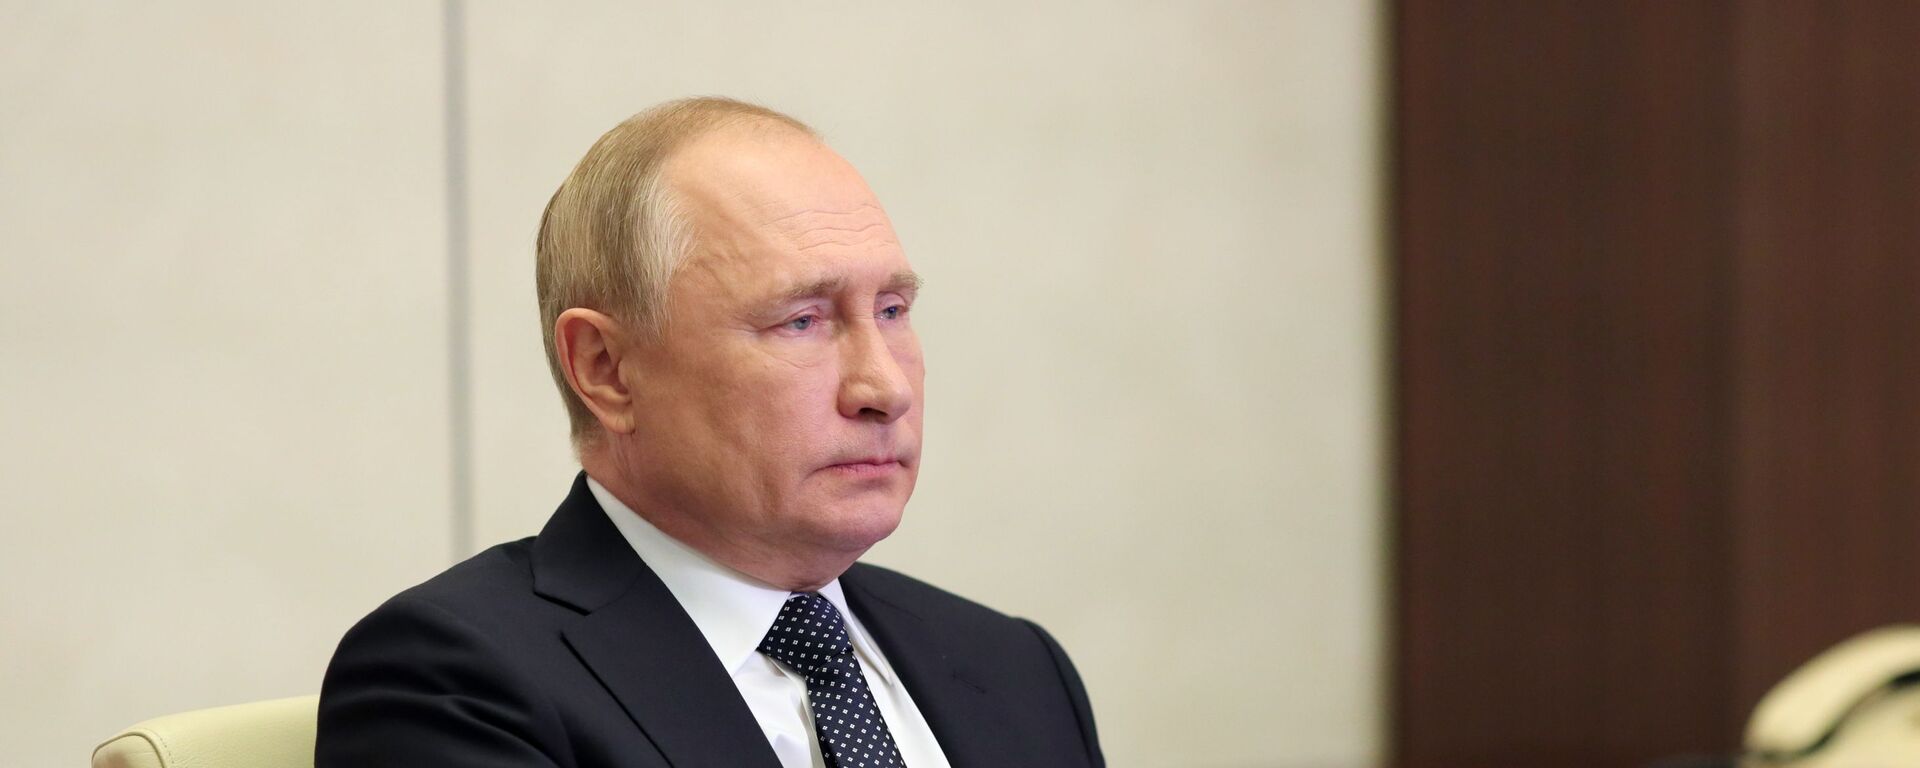 الرئيس الروسي فلاديمير بوتين خلال مشاركته في مؤتمر قمة مجموعة العشرين، روسيا 31 أكتوبر 2021 - سبوتنيك عربي, 1920, 18.11.2021